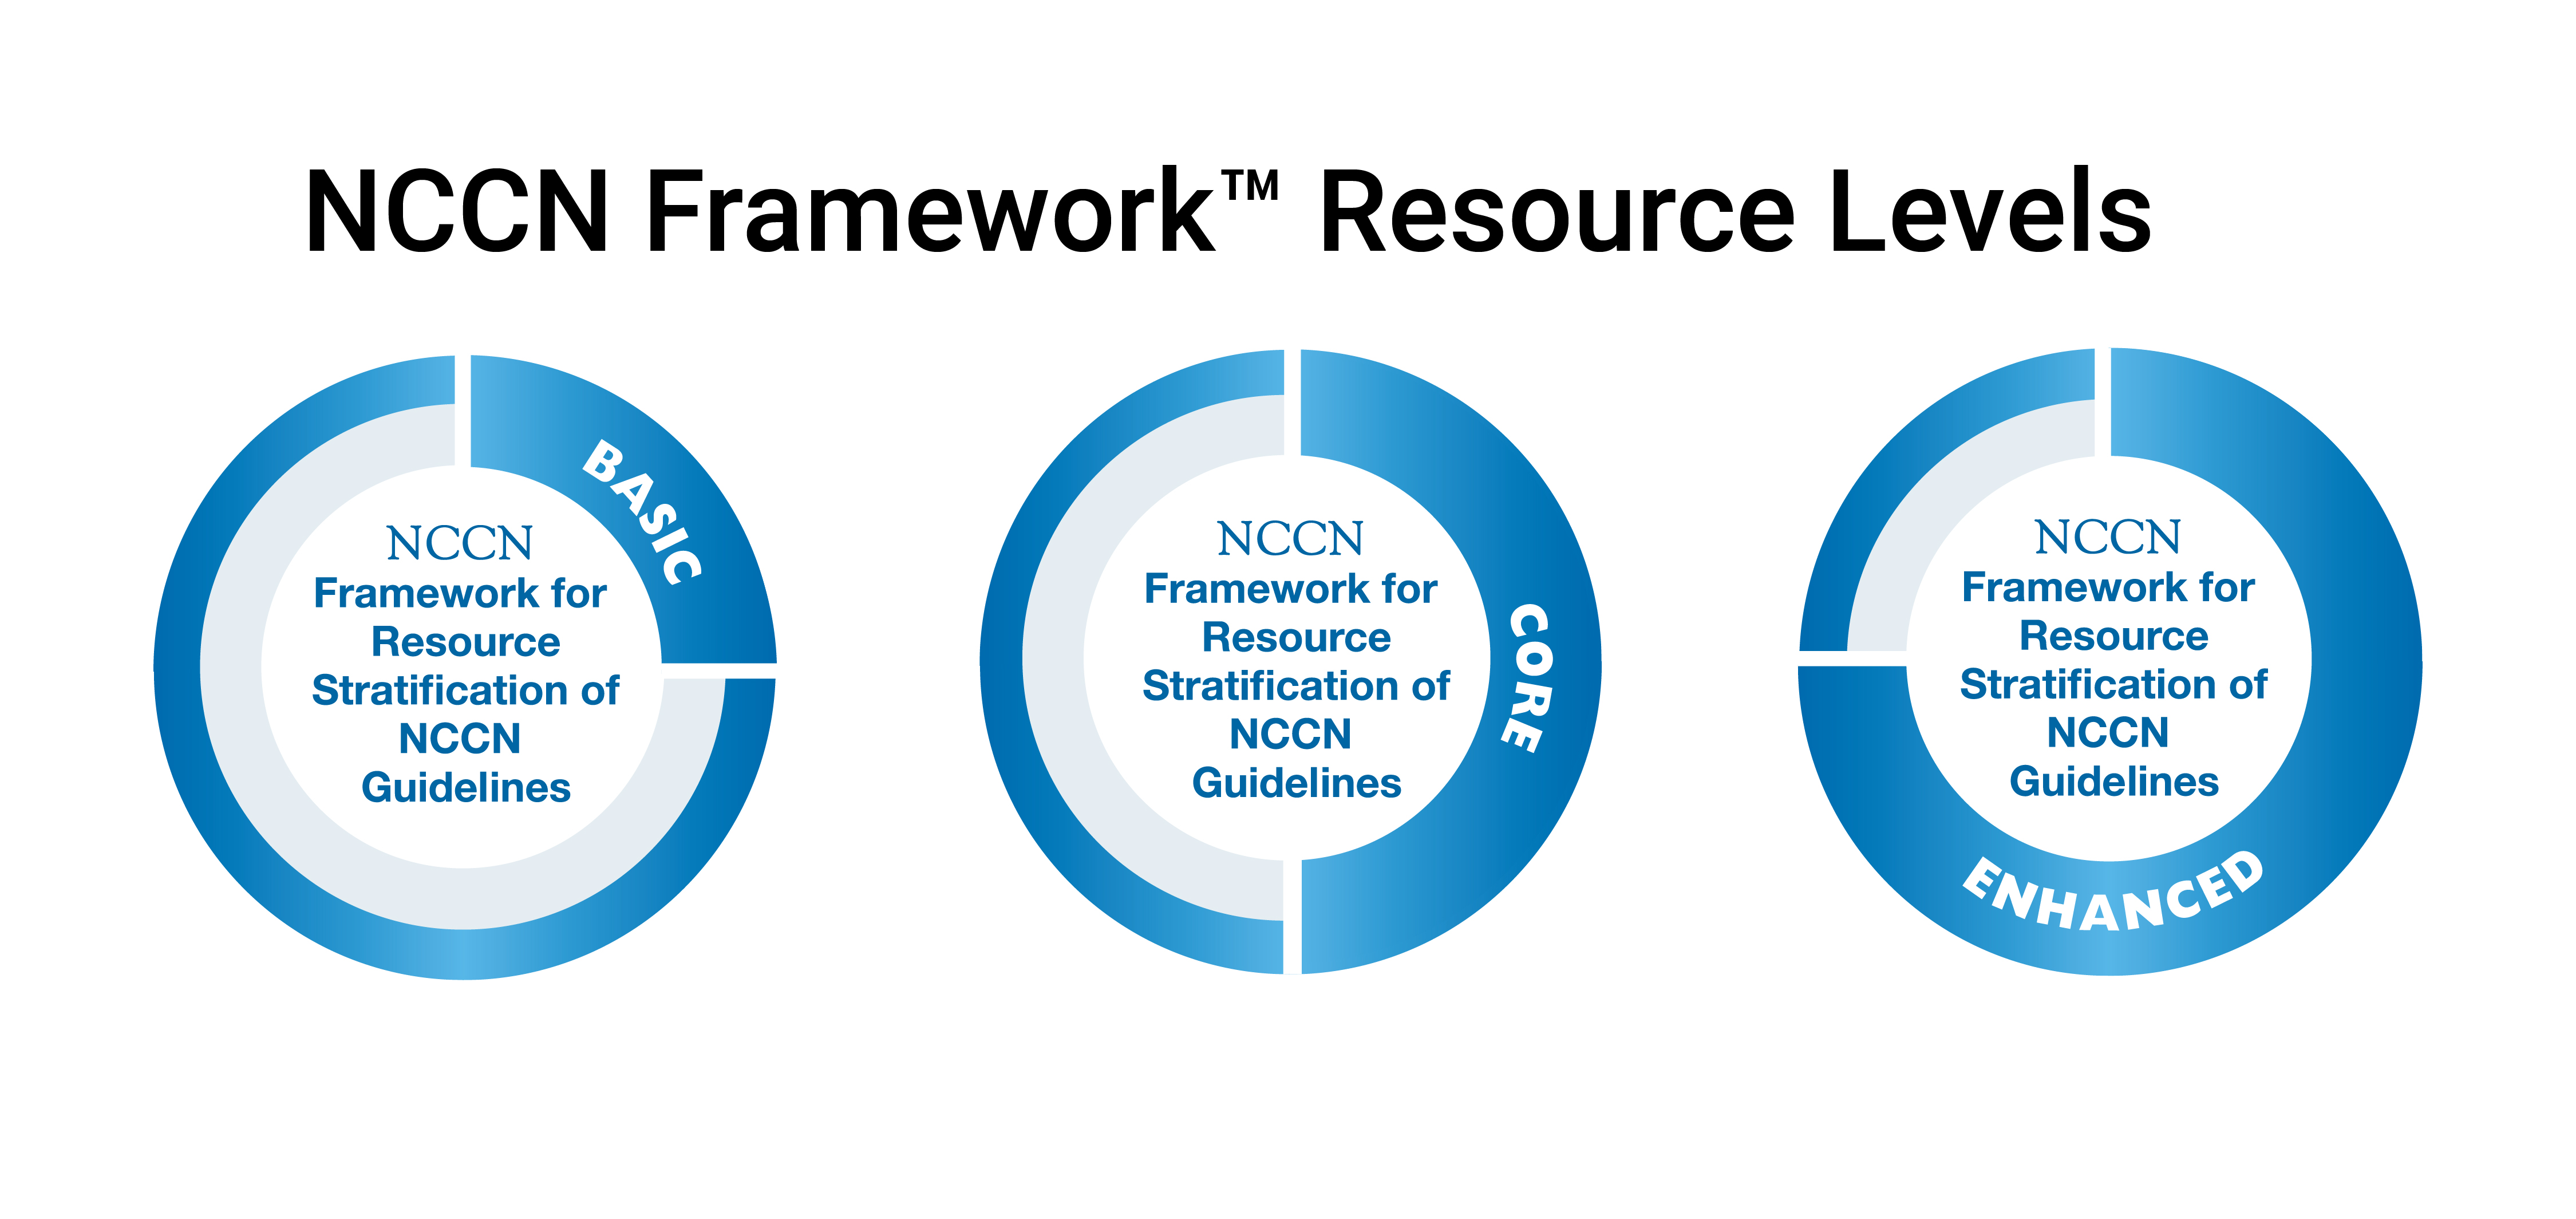 NCCN Framework for Resource Stratification of NCCN Guidelines (NCCN Framework™) Levels